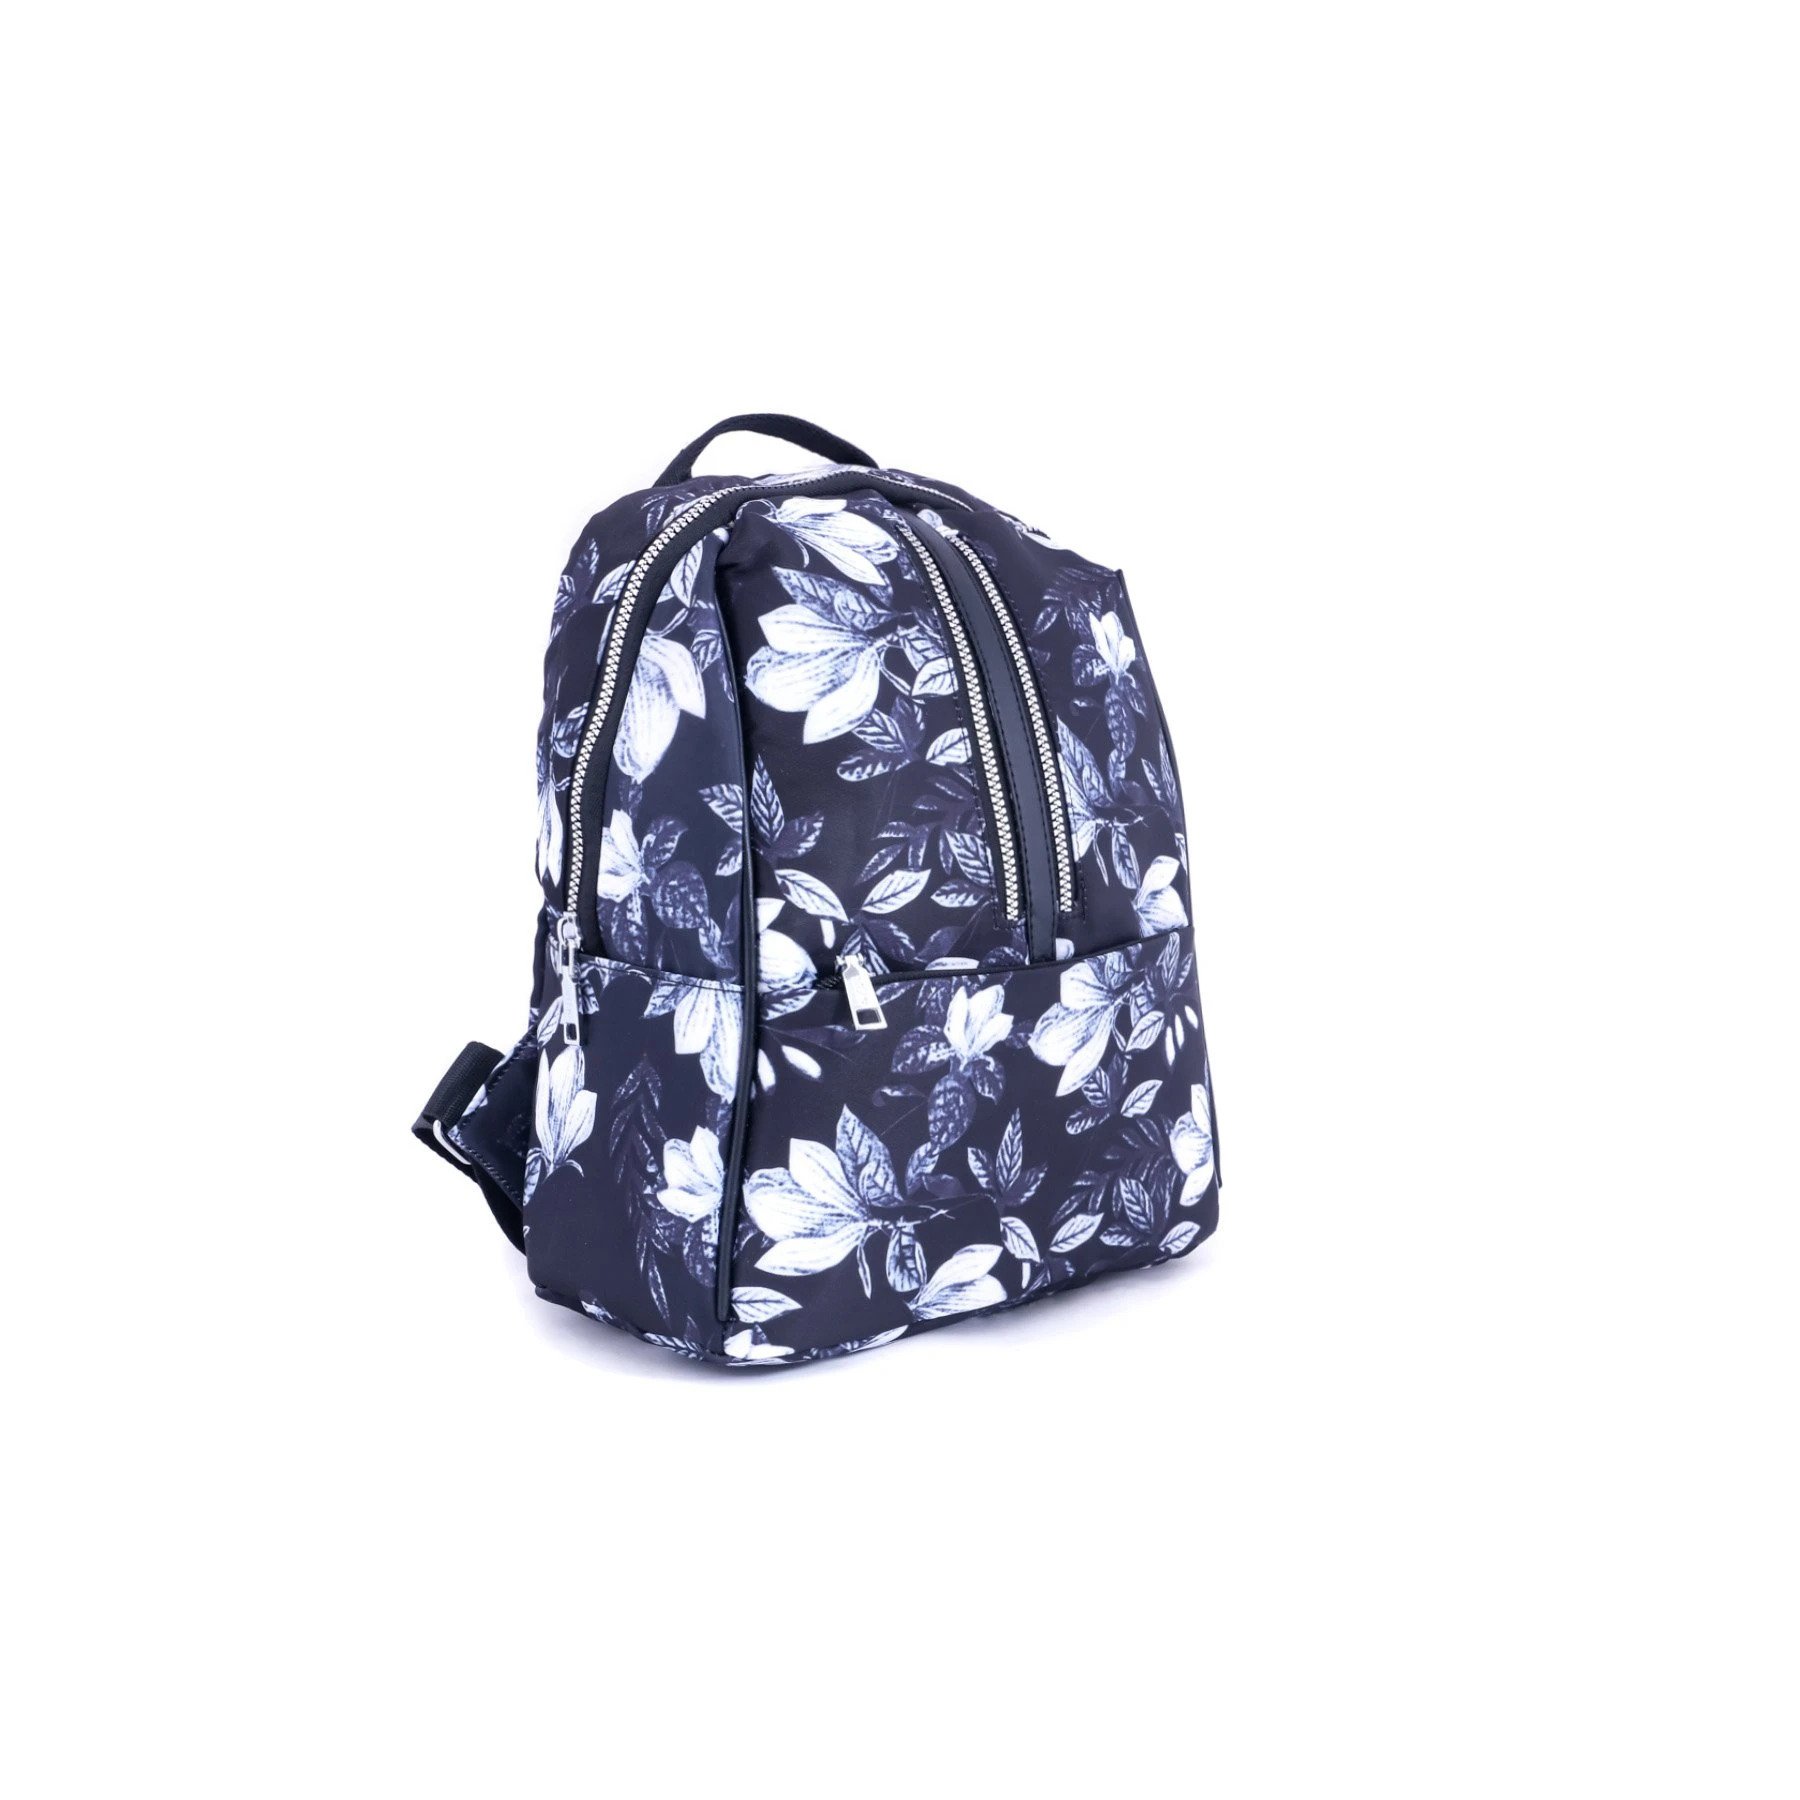 Blkwht Color Bags Shoulder Bags P47178